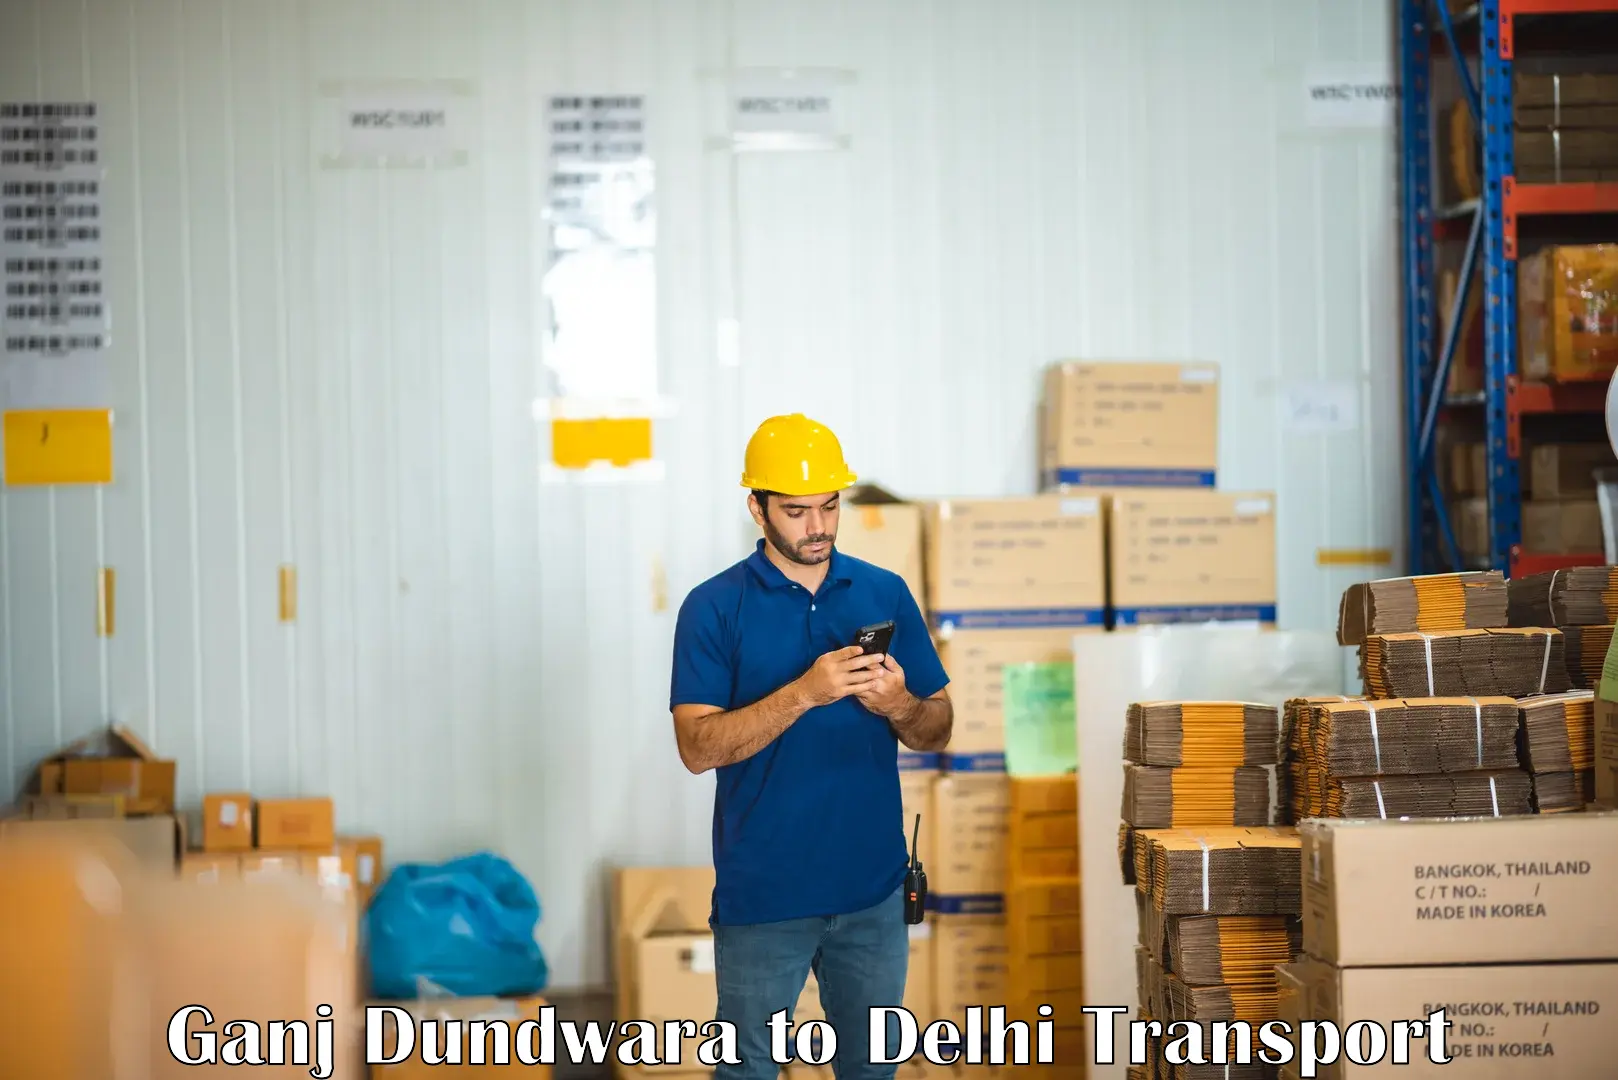 Parcel transport services in Ganj Dundwara to East Delhi